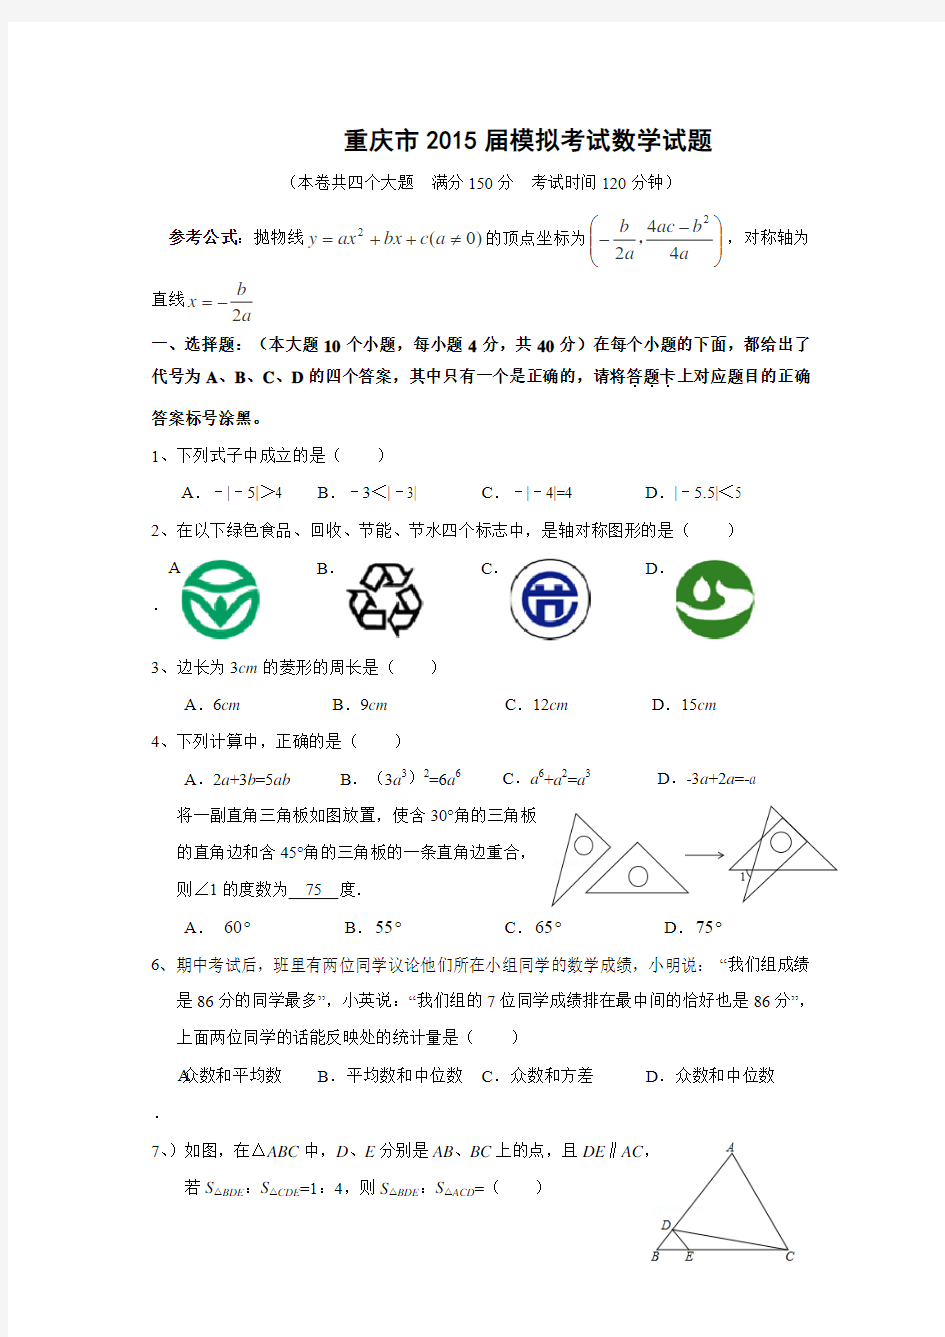 重庆市2015年初中毕业暨高中招生考试数学模拟试题(四)及答案